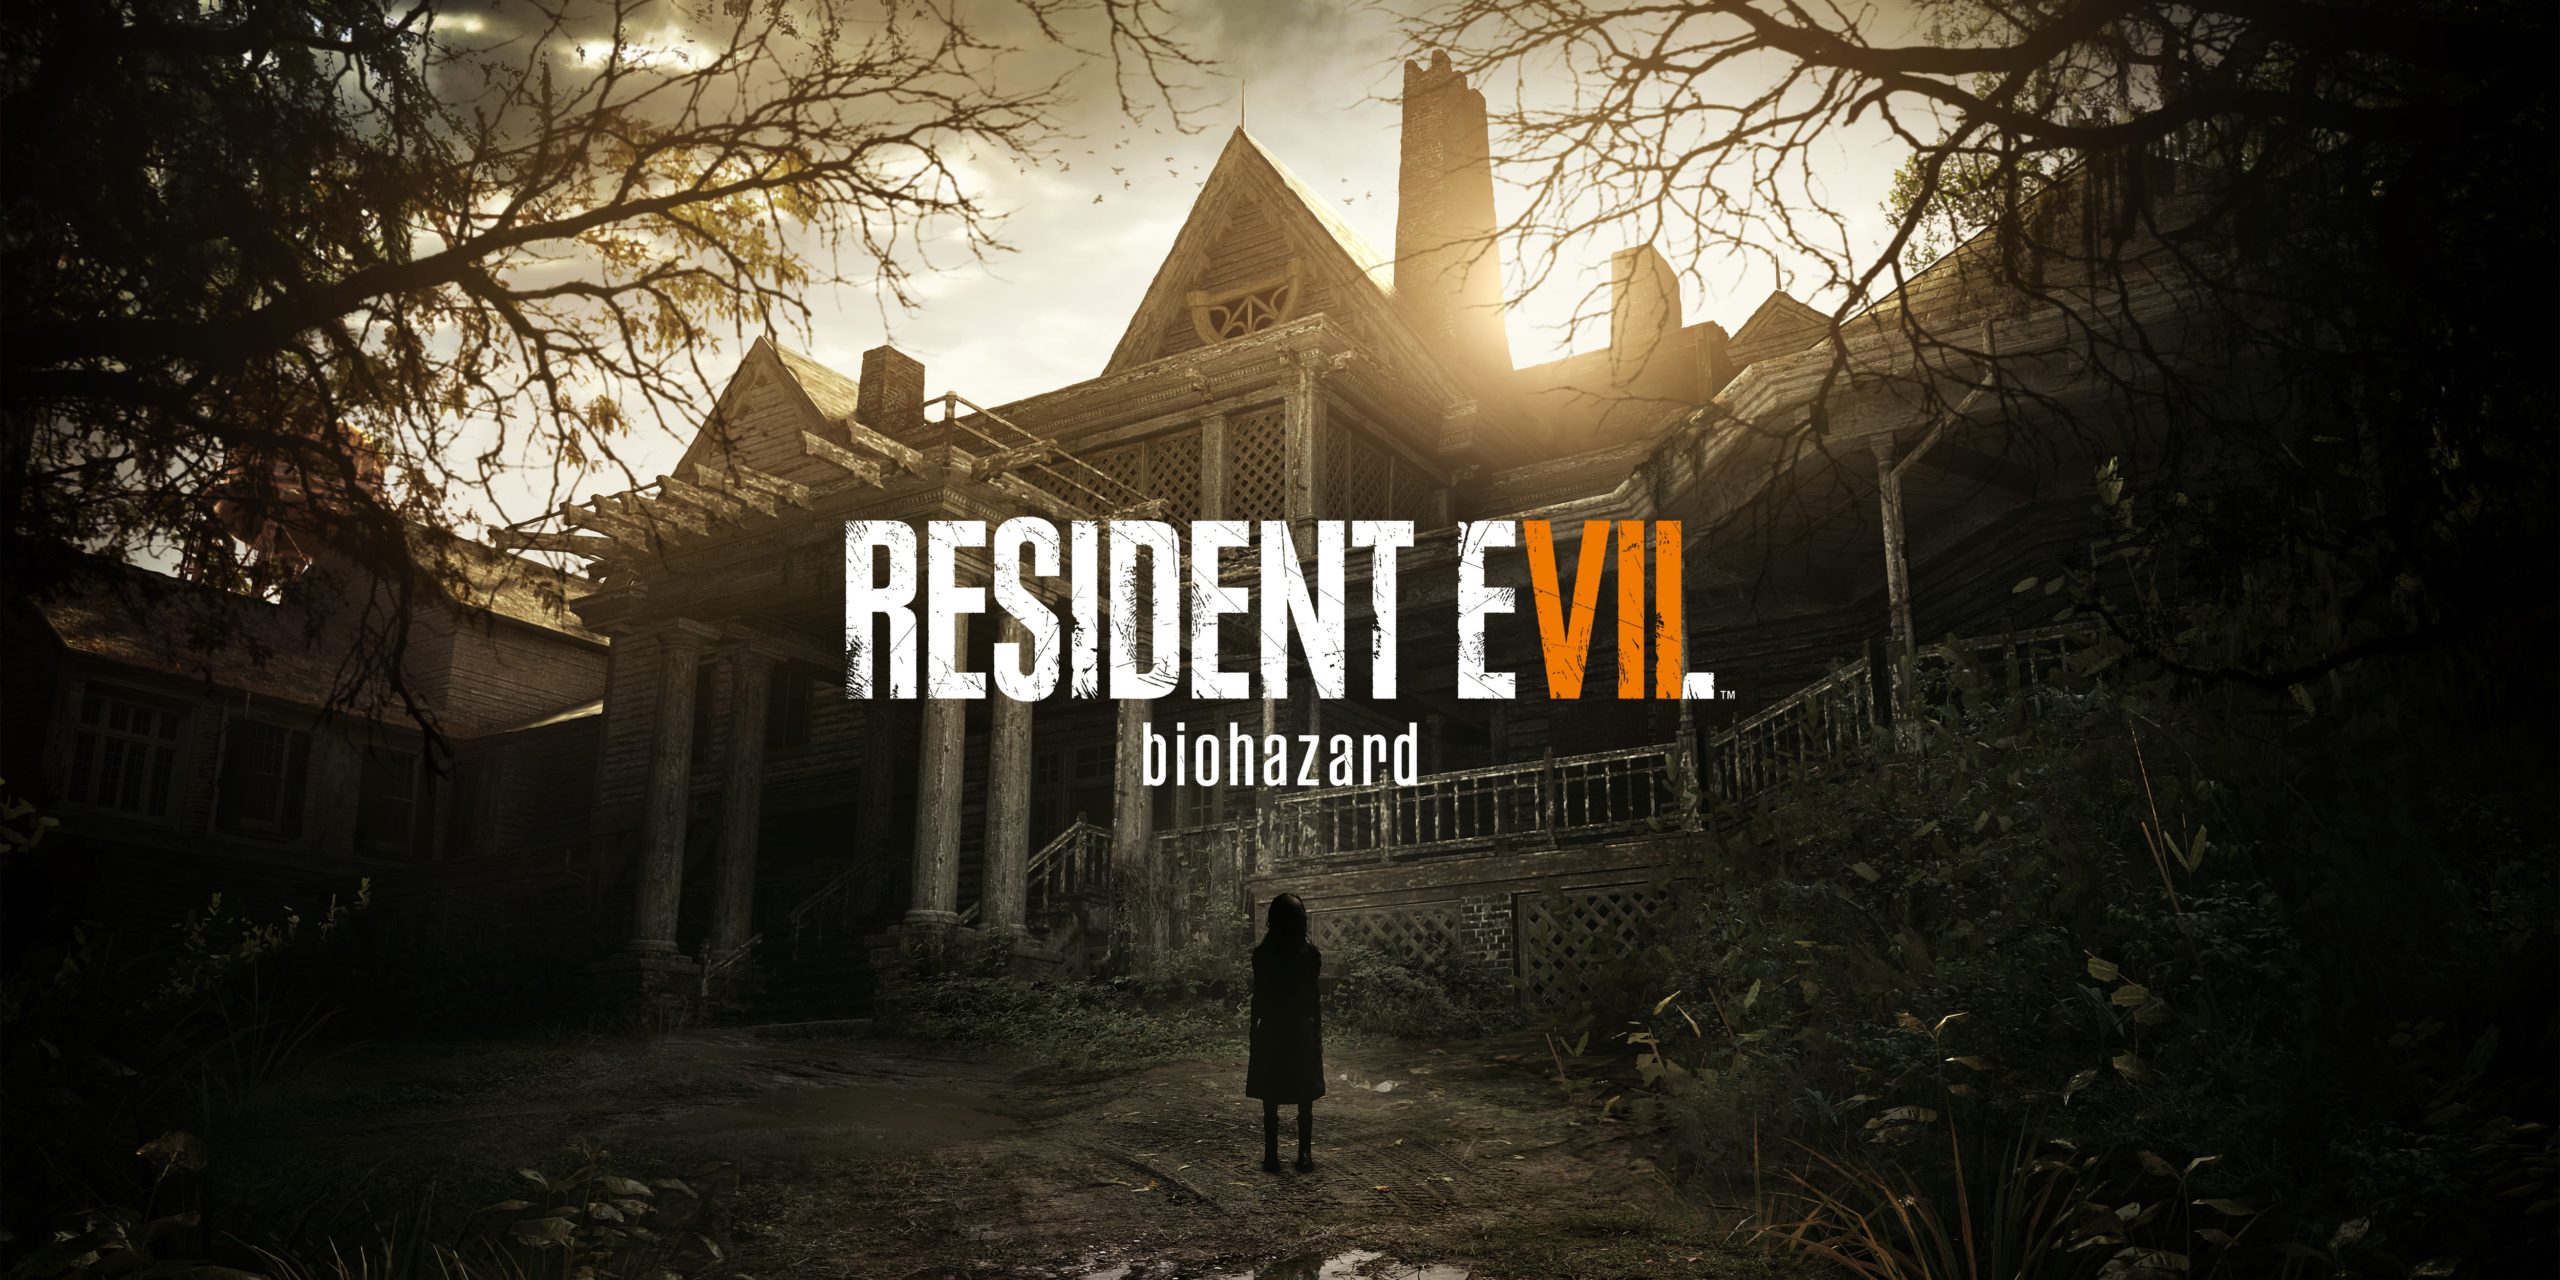 Hra Resident Evil 7: Biohazard překonala významnou metu RE7 min scaled